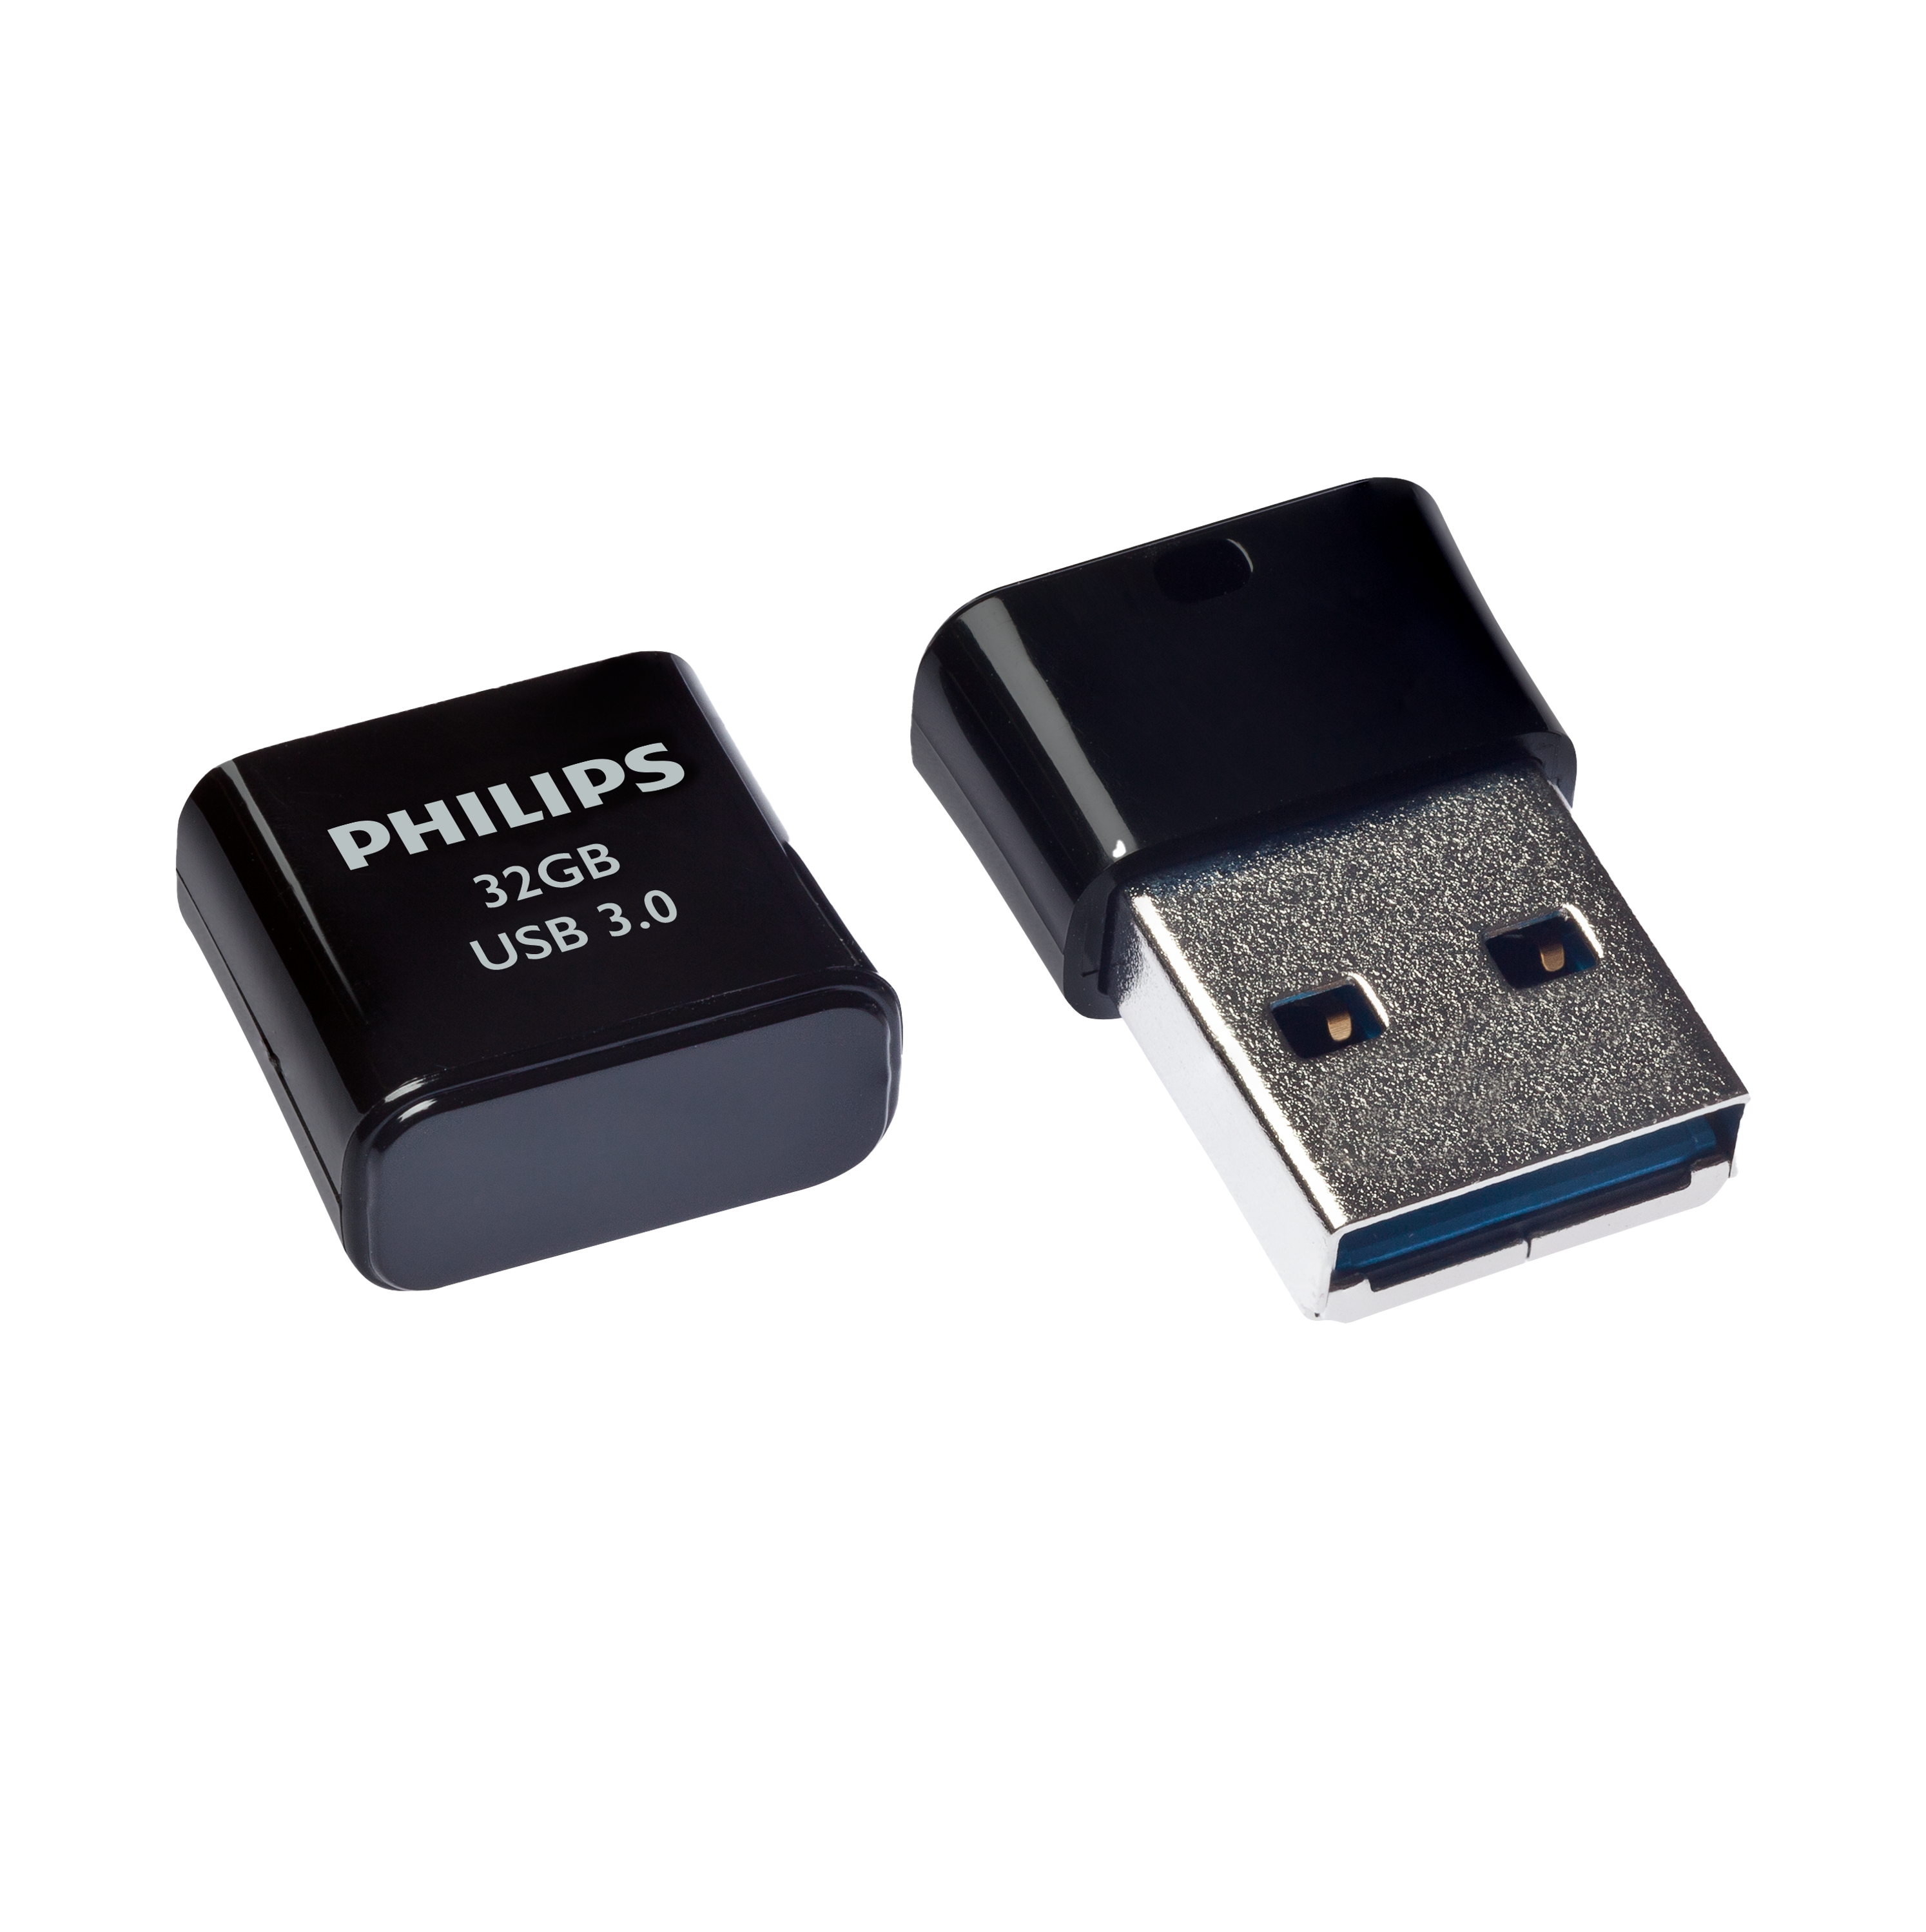 PHILIPS USB Stick Pico GB) 32 32GB, USB-Stick 100MB/s Edition, (Schwarz